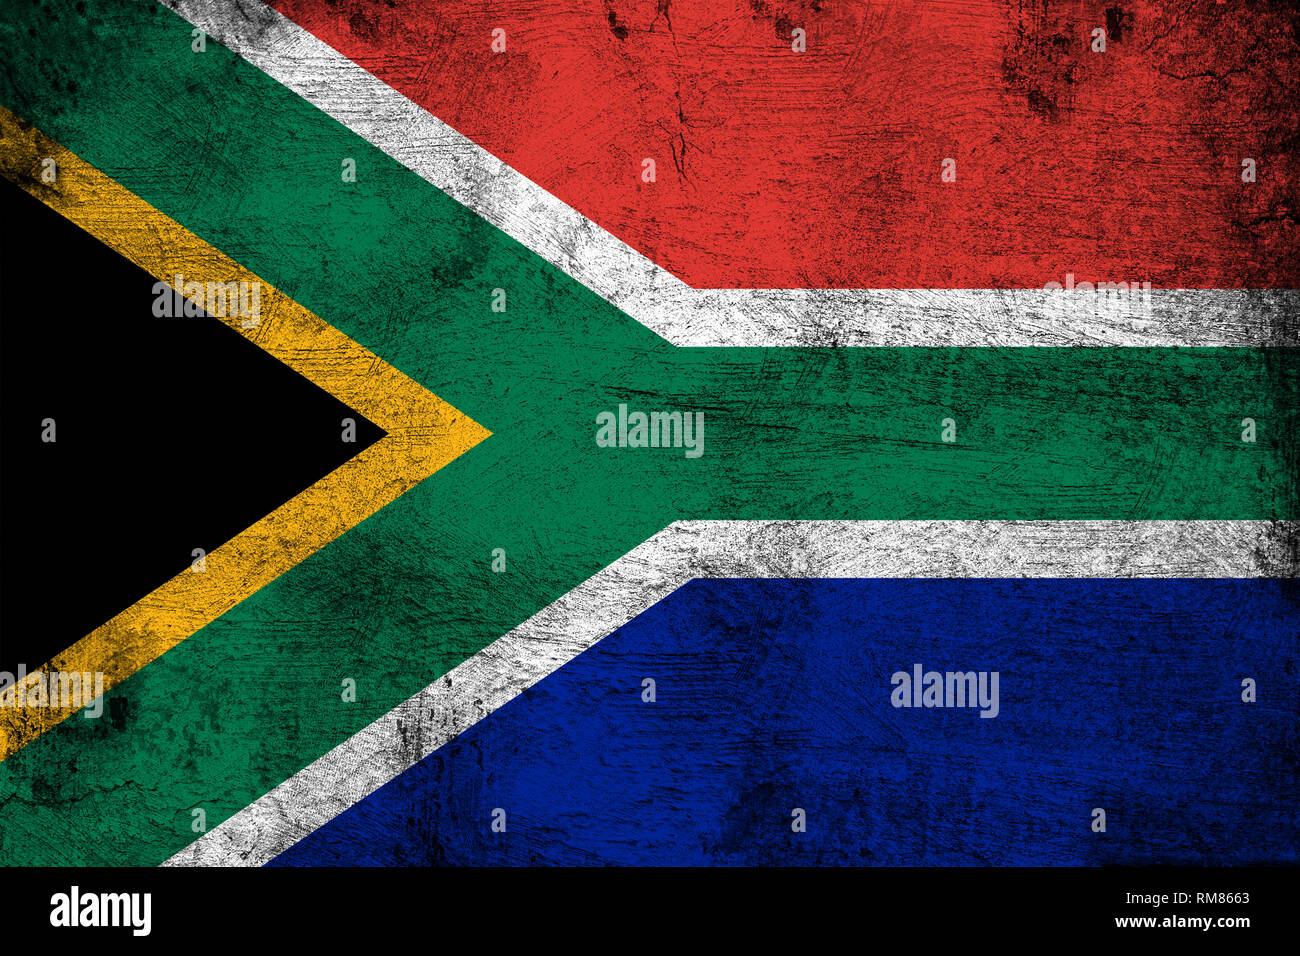 Afrique du Sud drapeau sale grunge et illustration. Parfait pour les fins de l'arrière-plan ou de texture. Banque D'Images